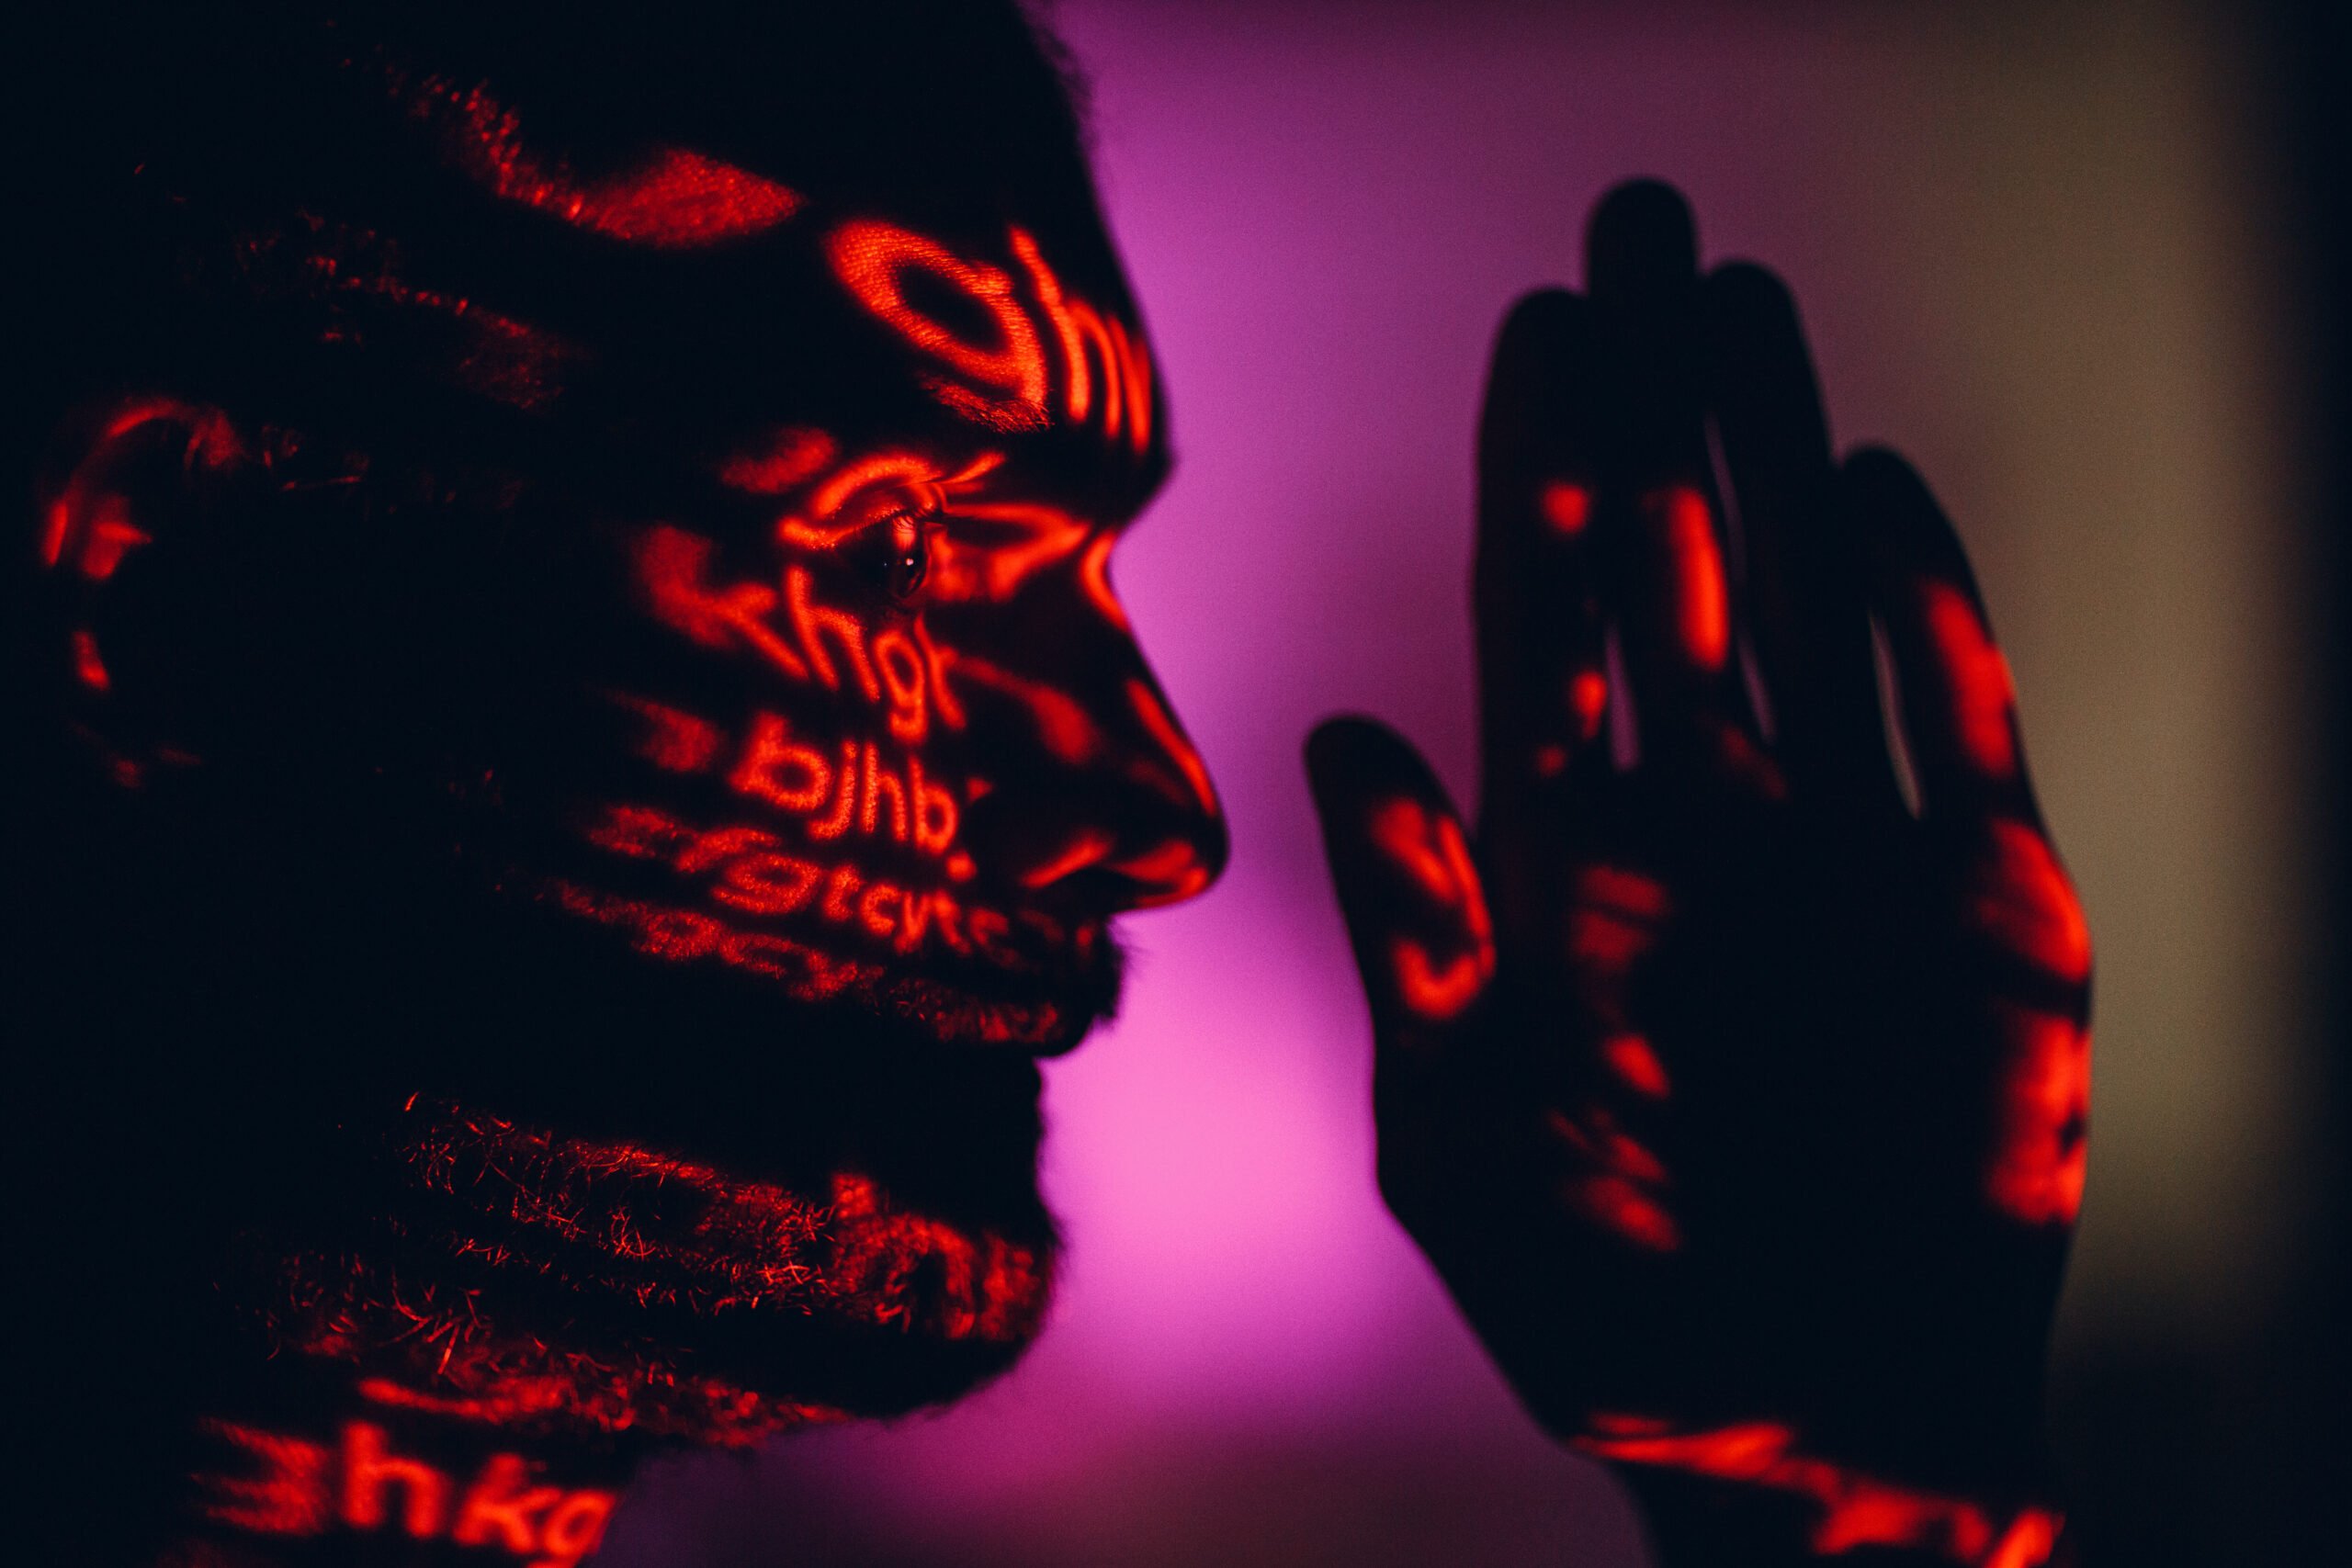 Portret mężczyzny oświetlony czerwonym światłem z napisami rzutowanymi na twarz i dłoń.